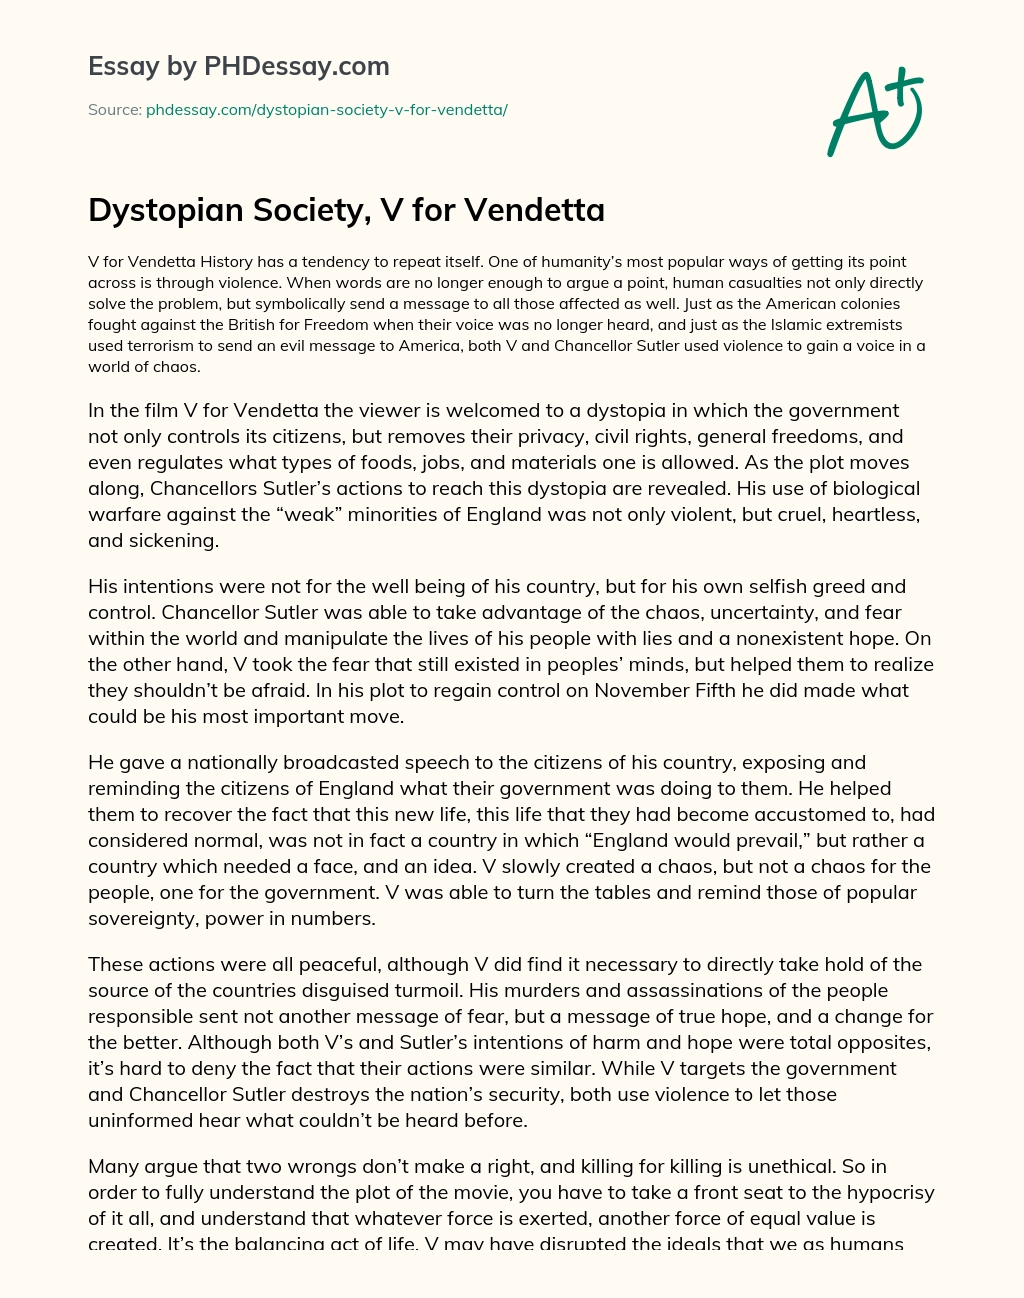 Dystopian Society, V for Vendetta essay